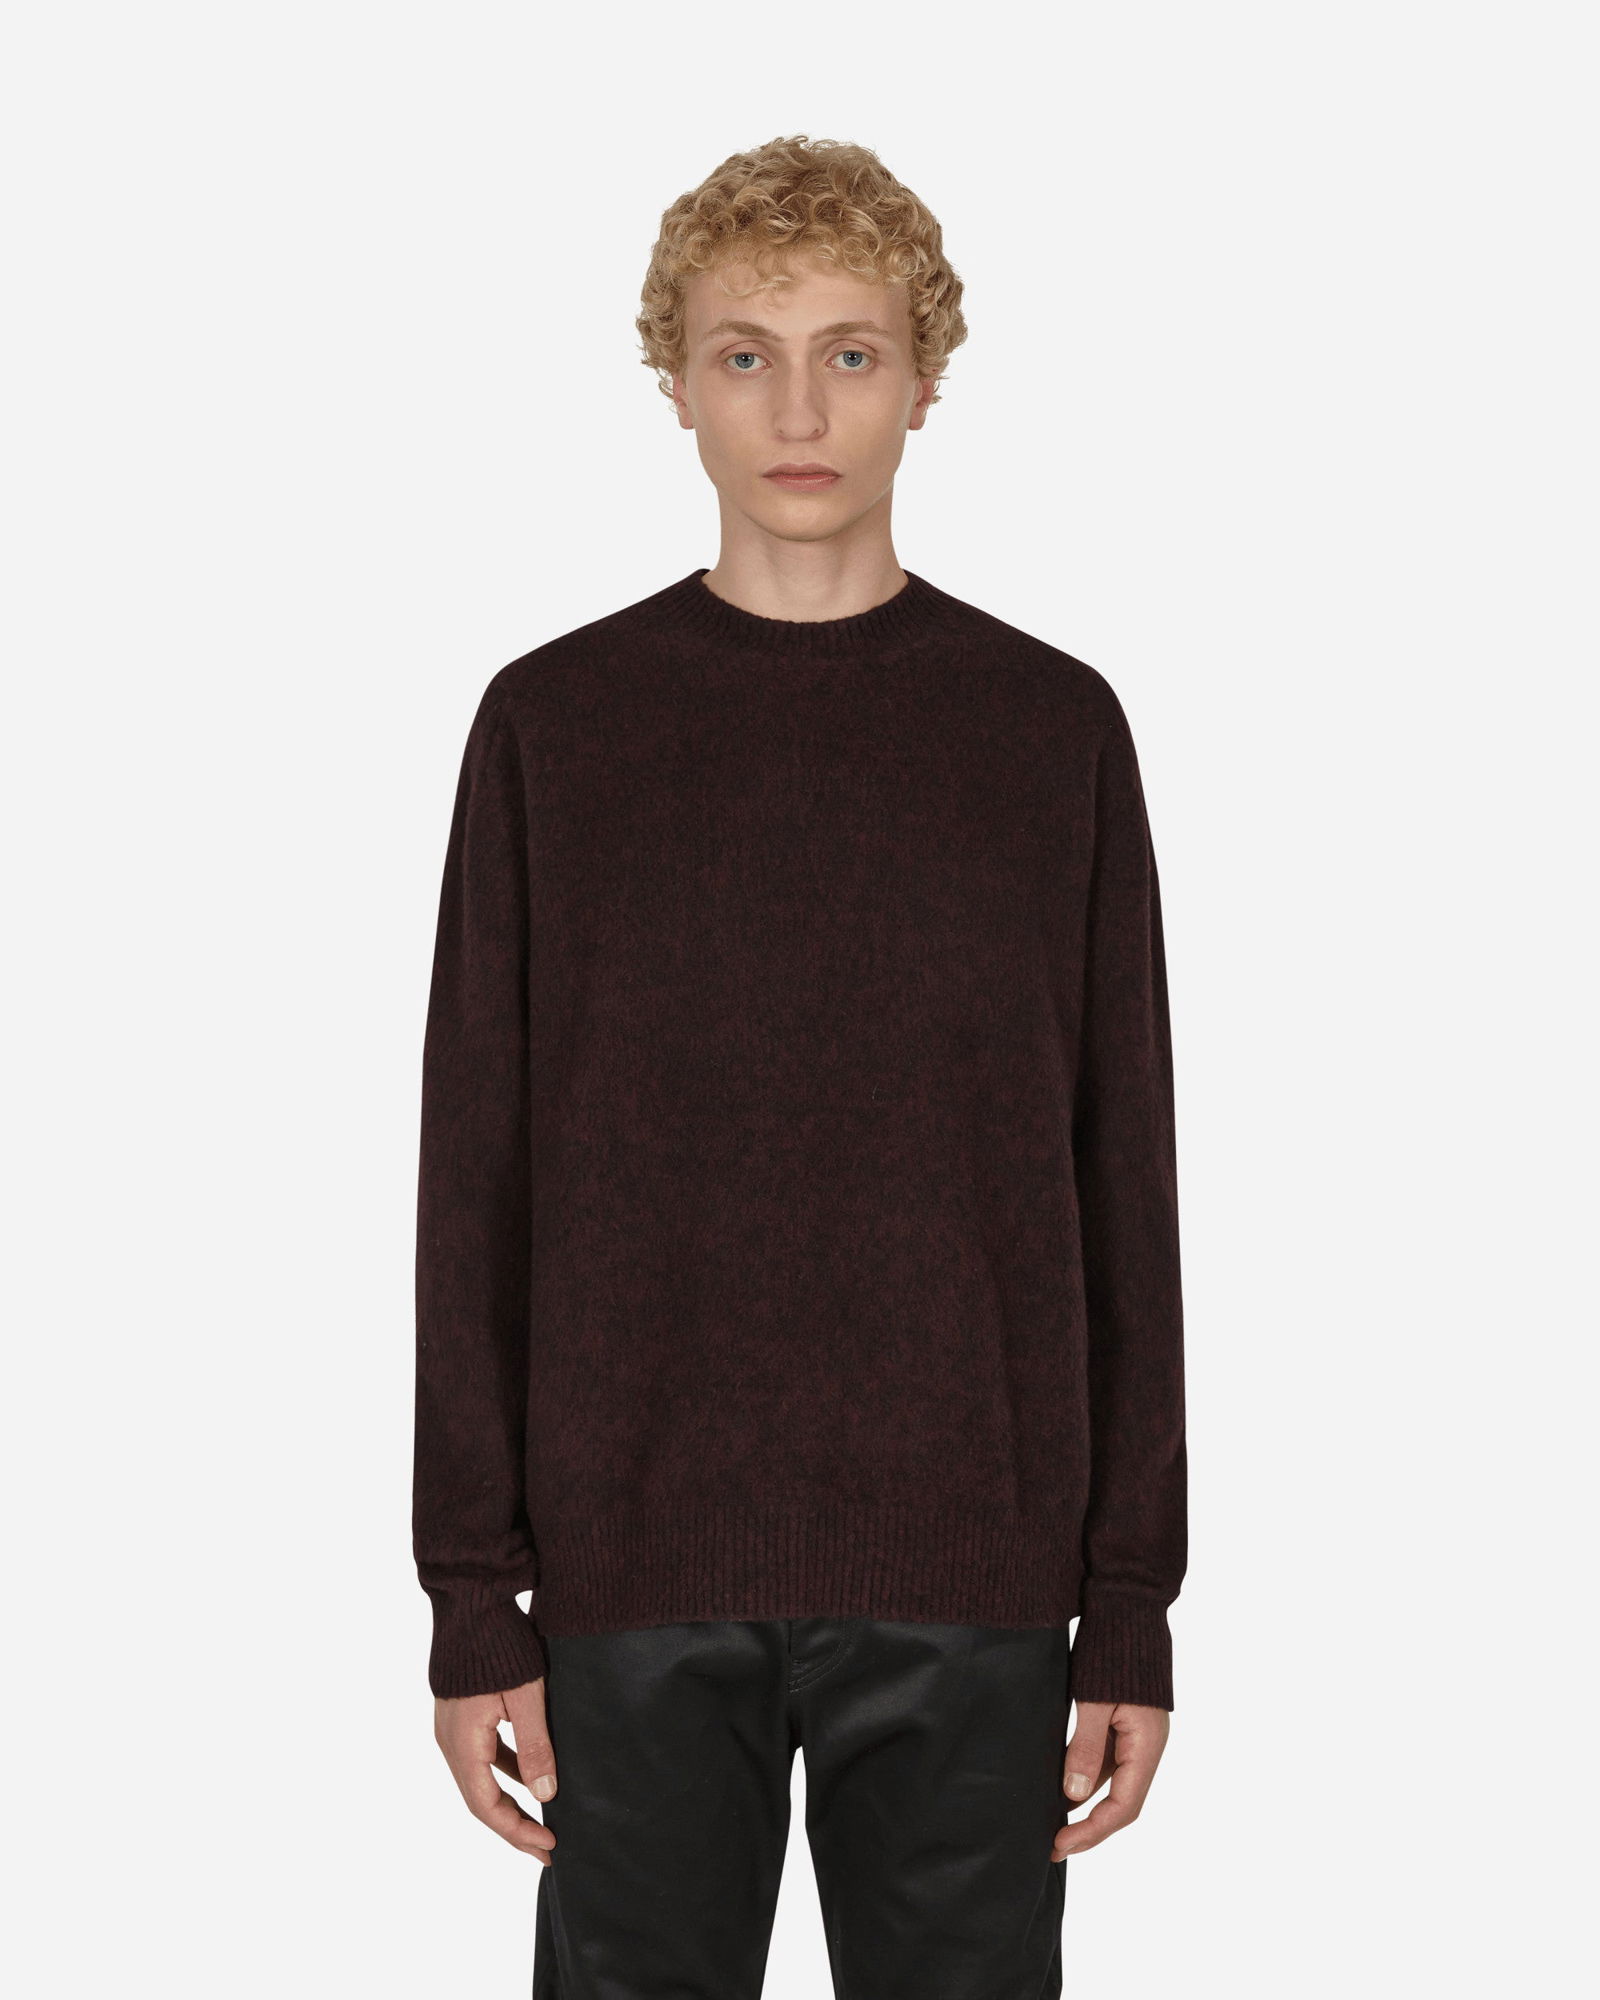 OAMC Whistler Turtleneck Sweater - ニット/セーター